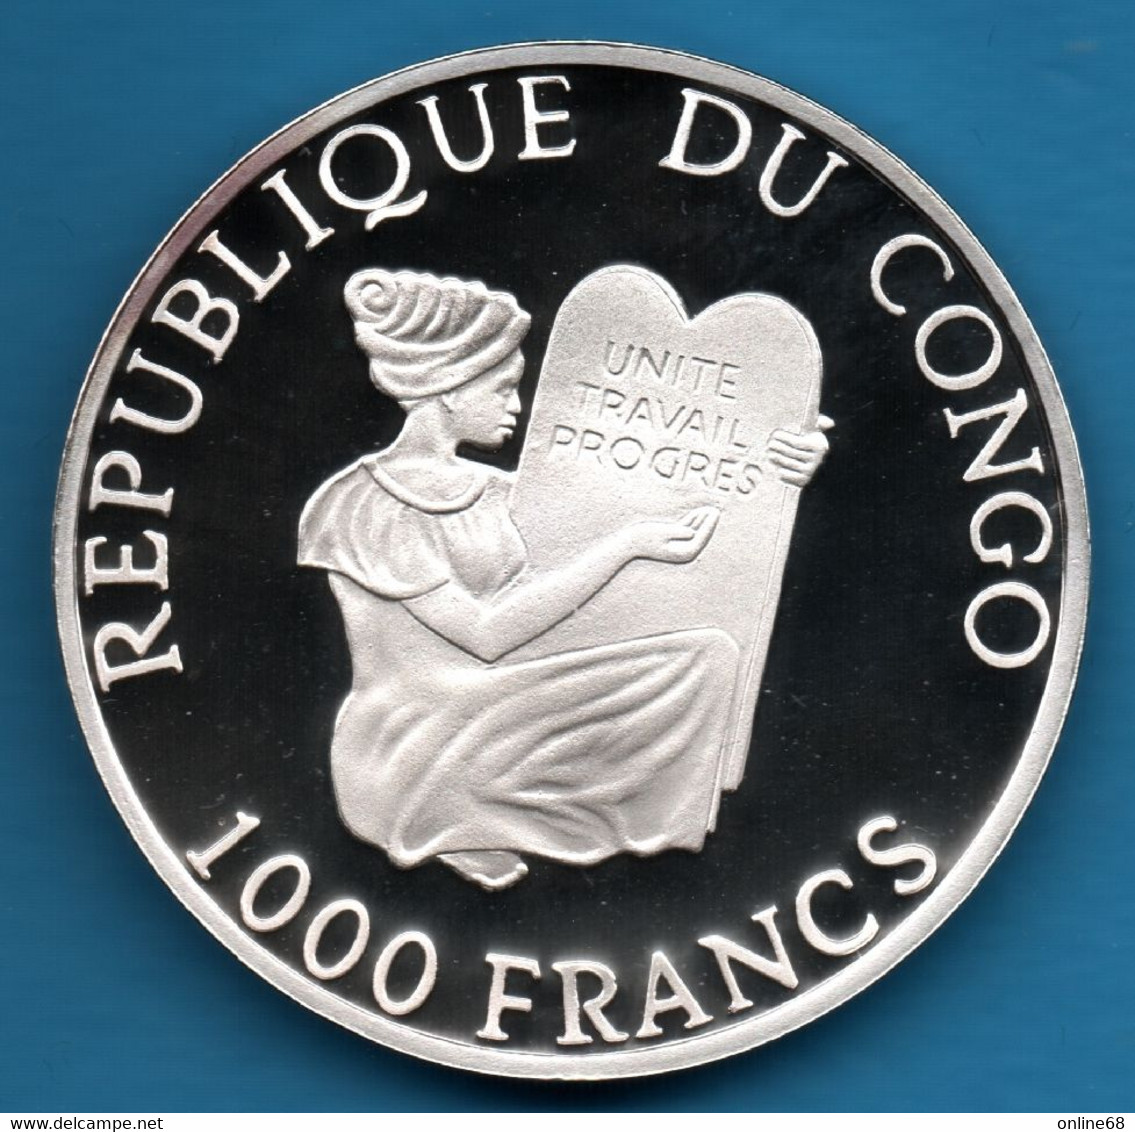 REPUBLIQUE DU CONGO 1000 Francs 1997 CORBITA CARGO ROMANI  KM# 29 	Argent 999‰ SILVER PROOF - Congo (République Démocratique 1998)